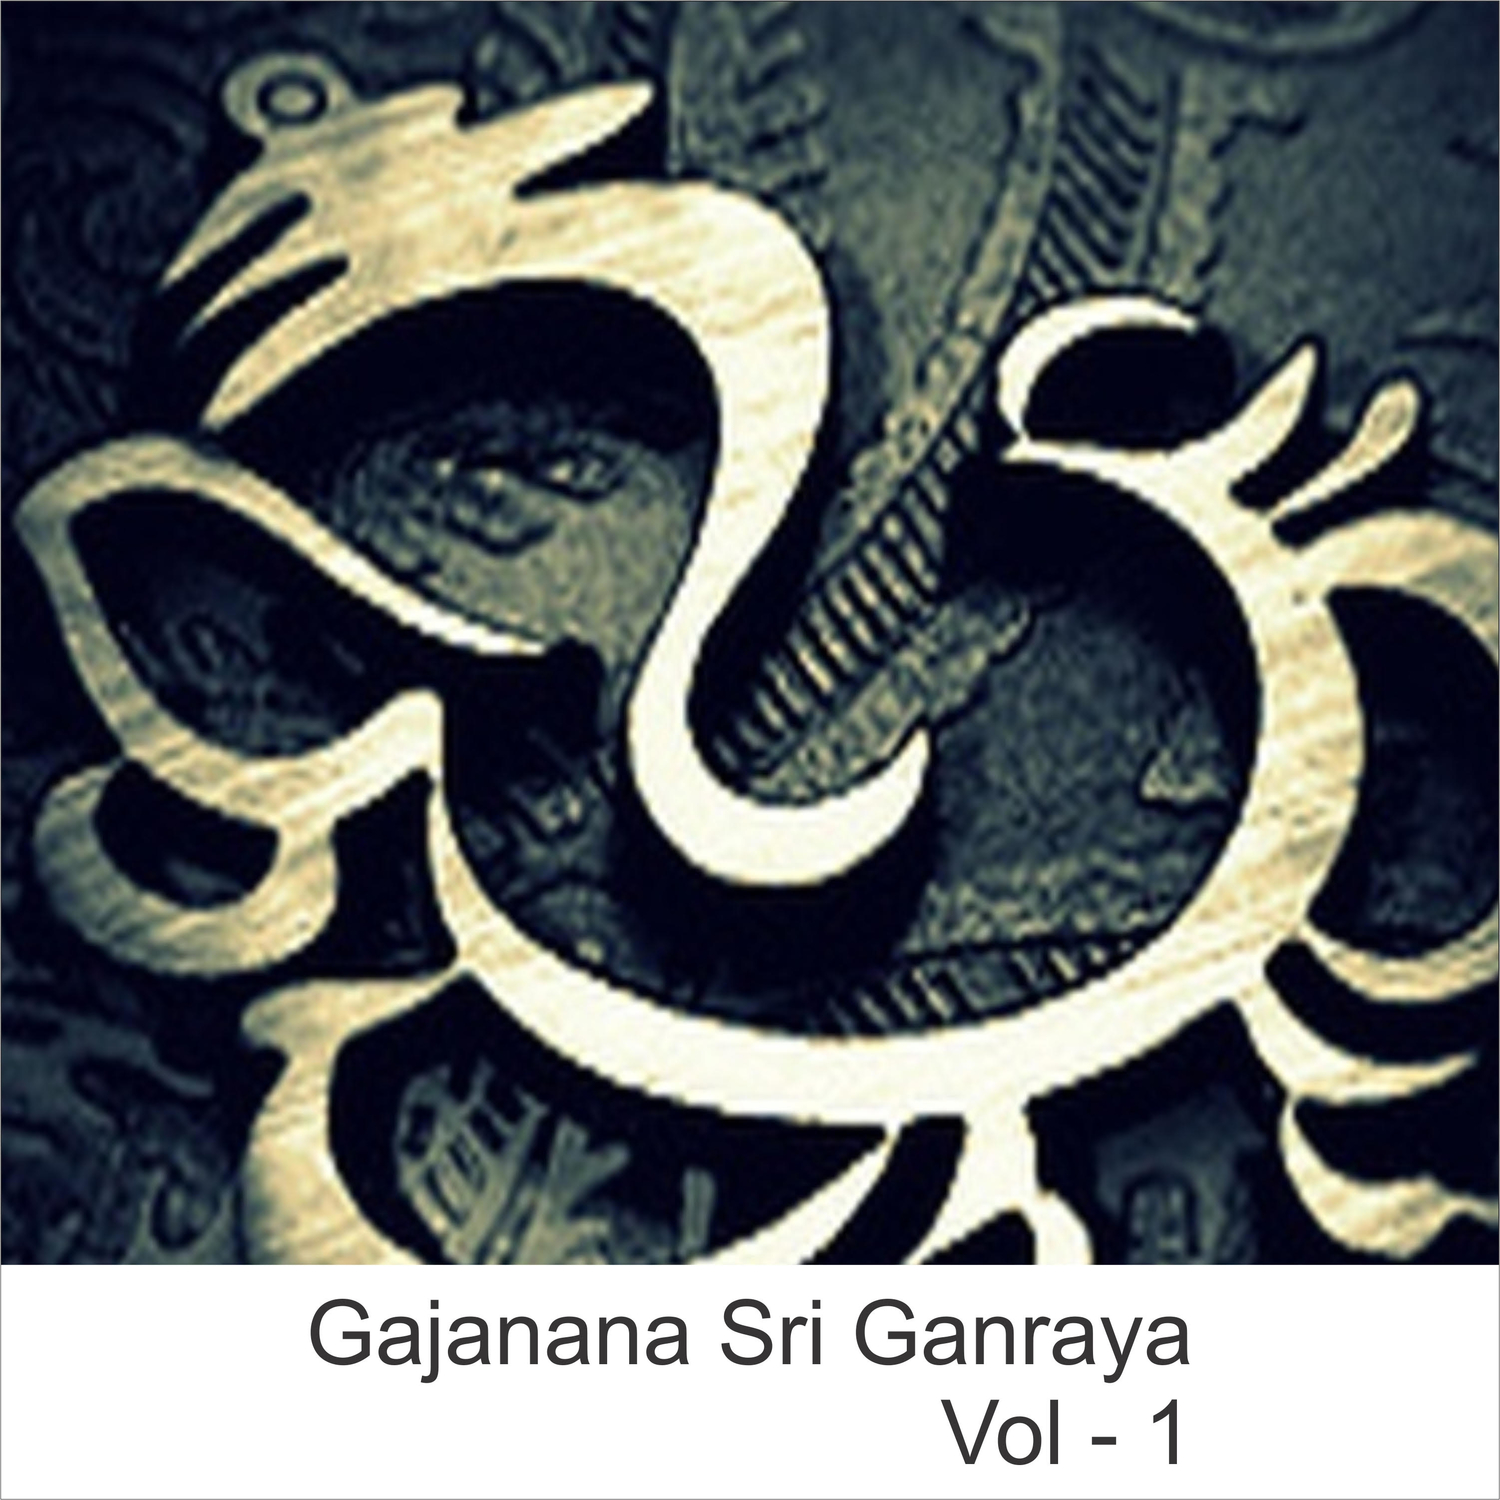 Gajanana Sri Ganraya, Vol. 1